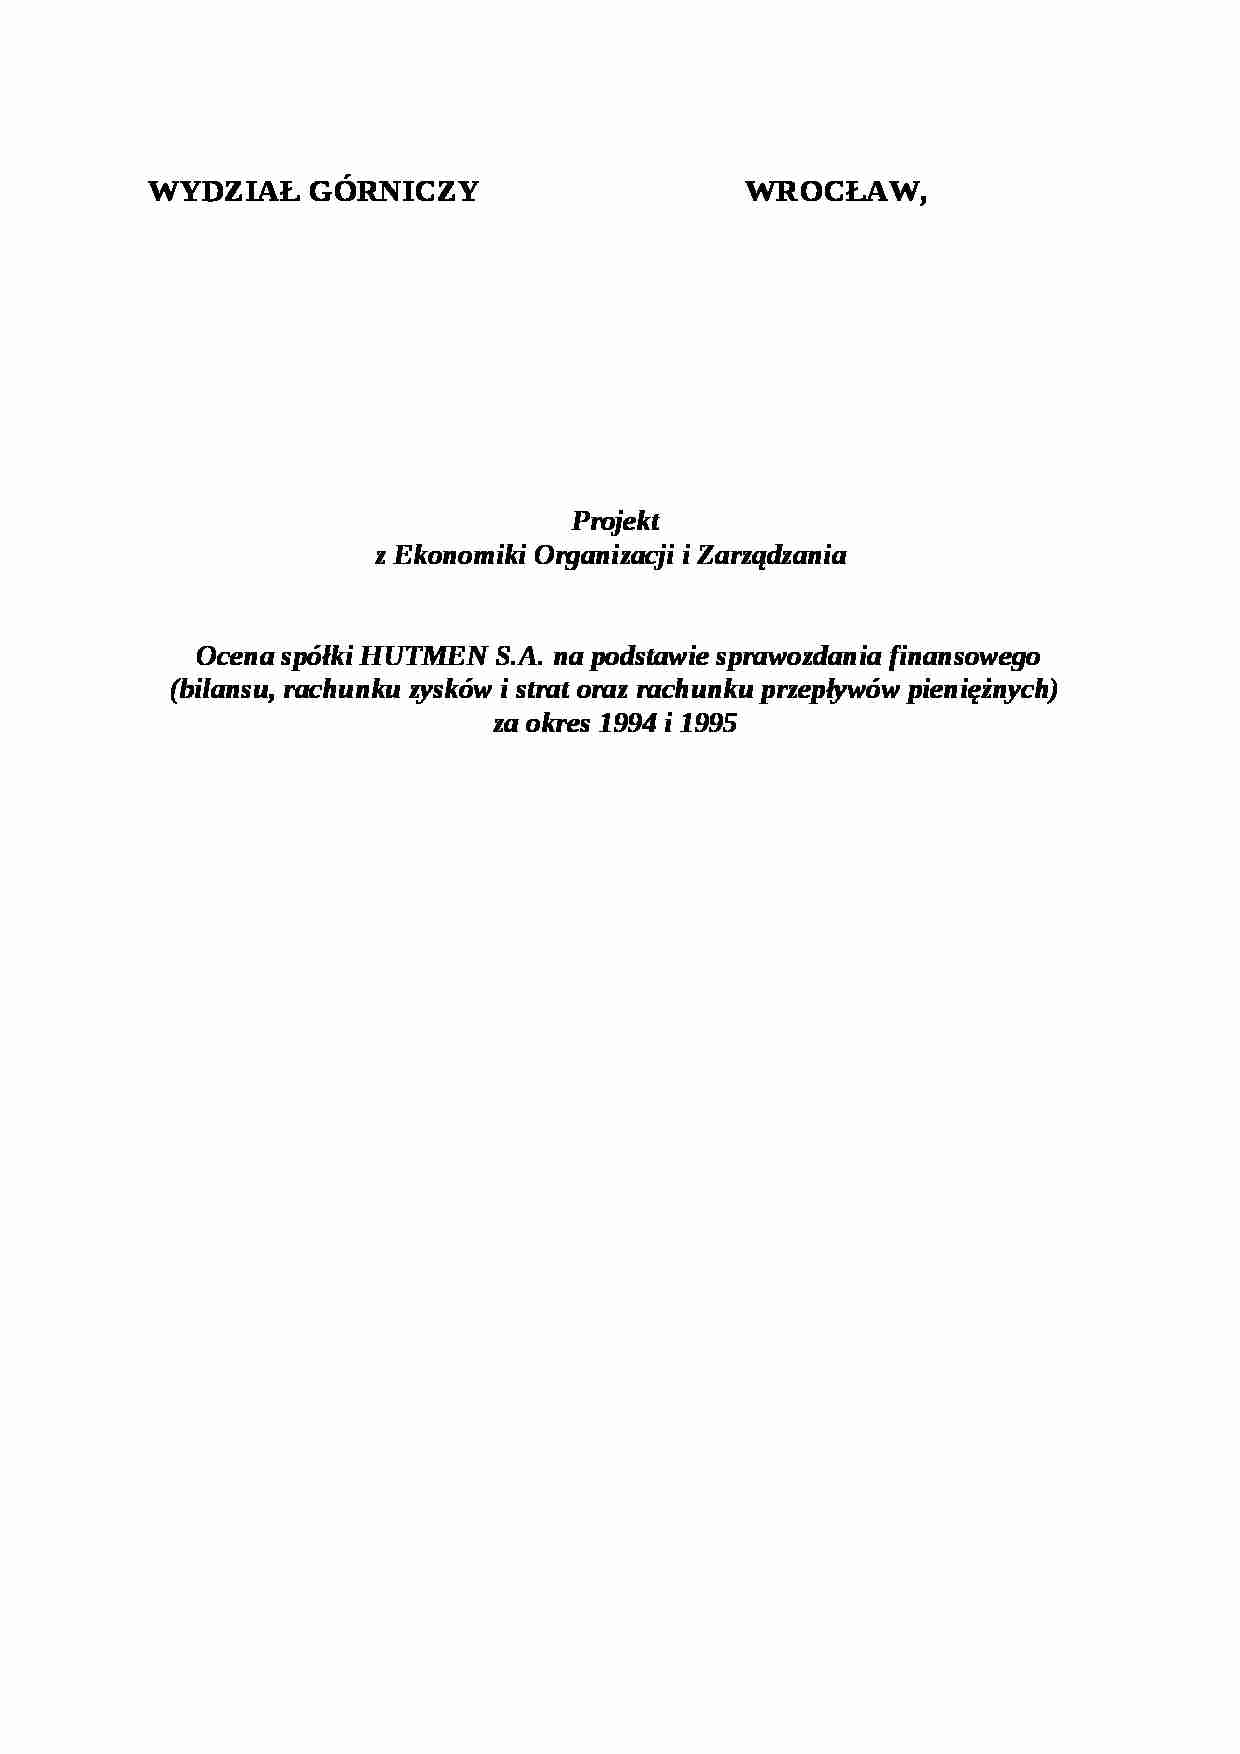 Ocena spółki HUTMEN S.A. na podstawie sprawozdania finansowego-opracowanie - strona 1